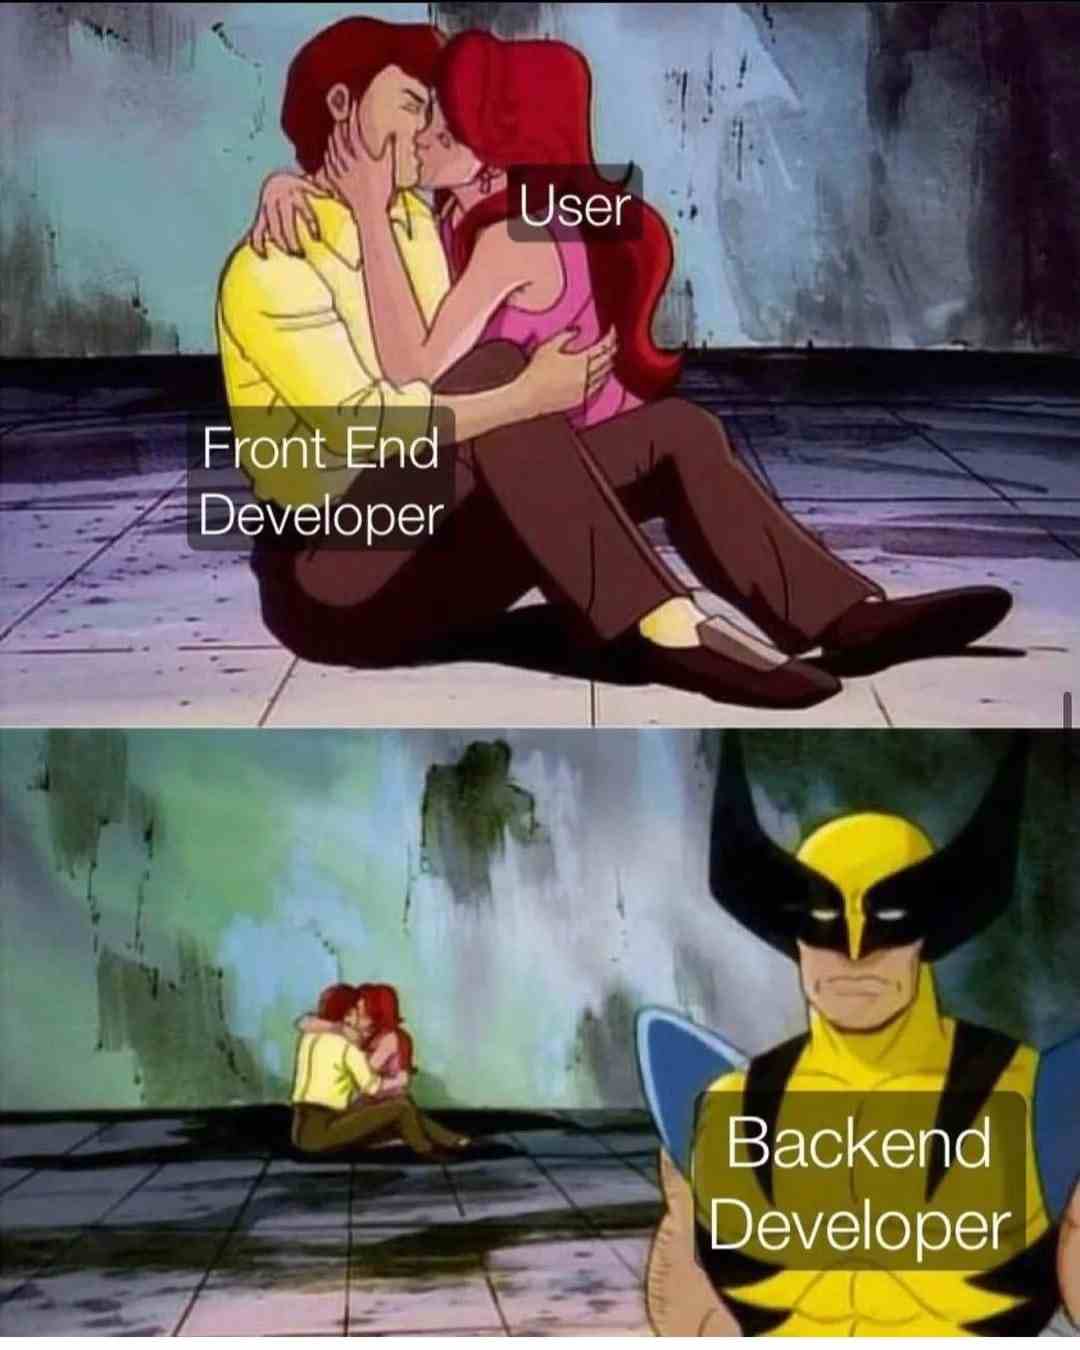 Front End Developer & Backend Developer